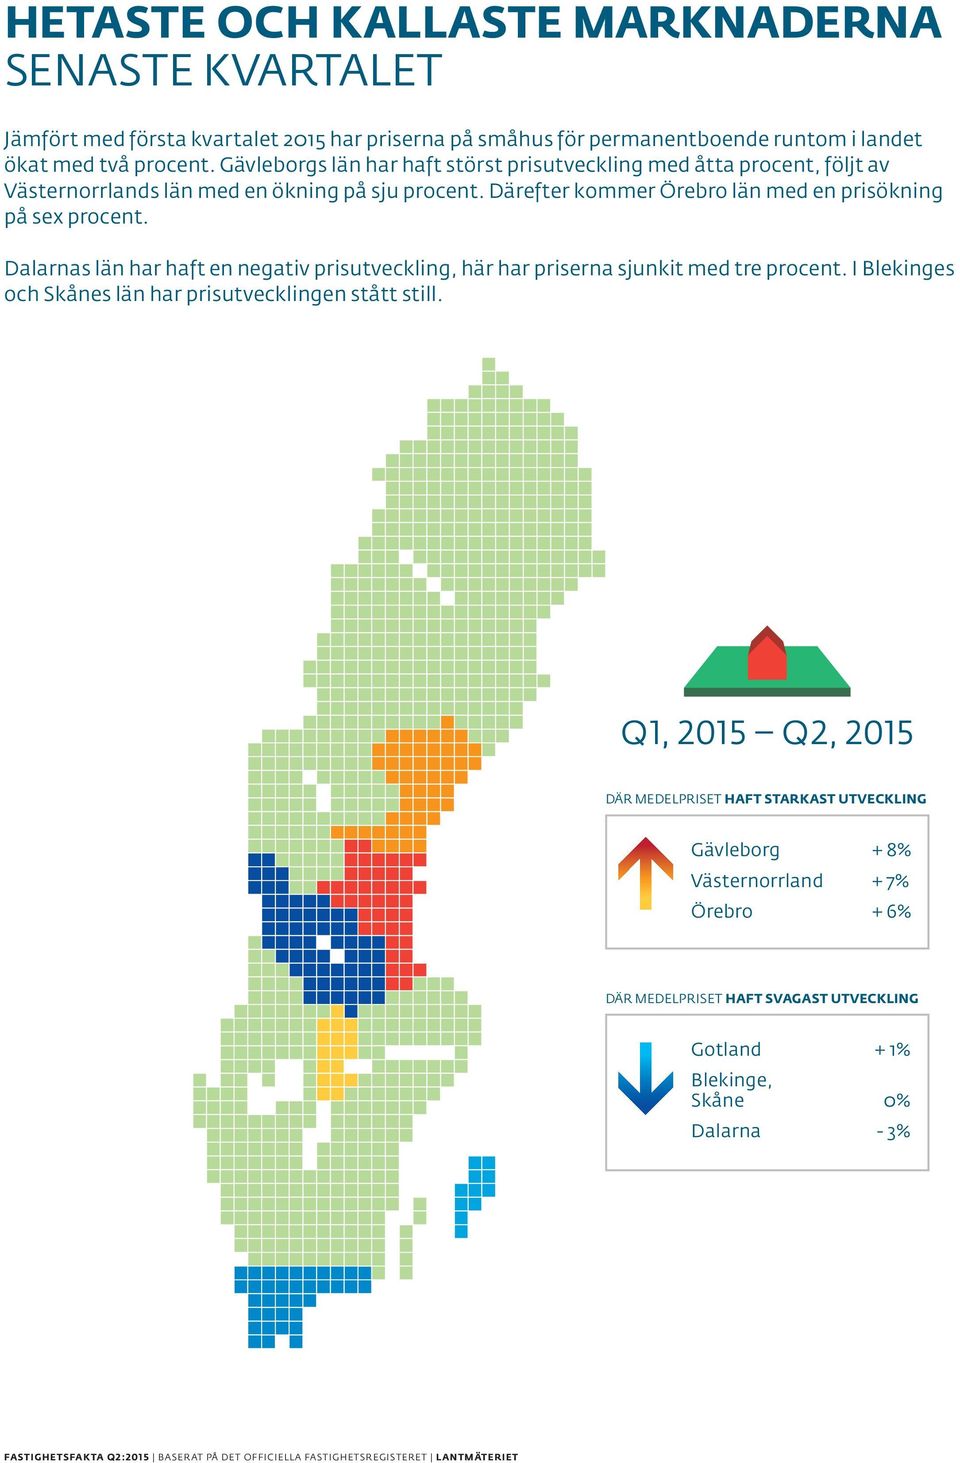 Därefter kommer Örebro län med en prisökning på sex procent. Dalarnas län har haft en negativ prisutveckling, här har priserna sjunkit med tre procent.